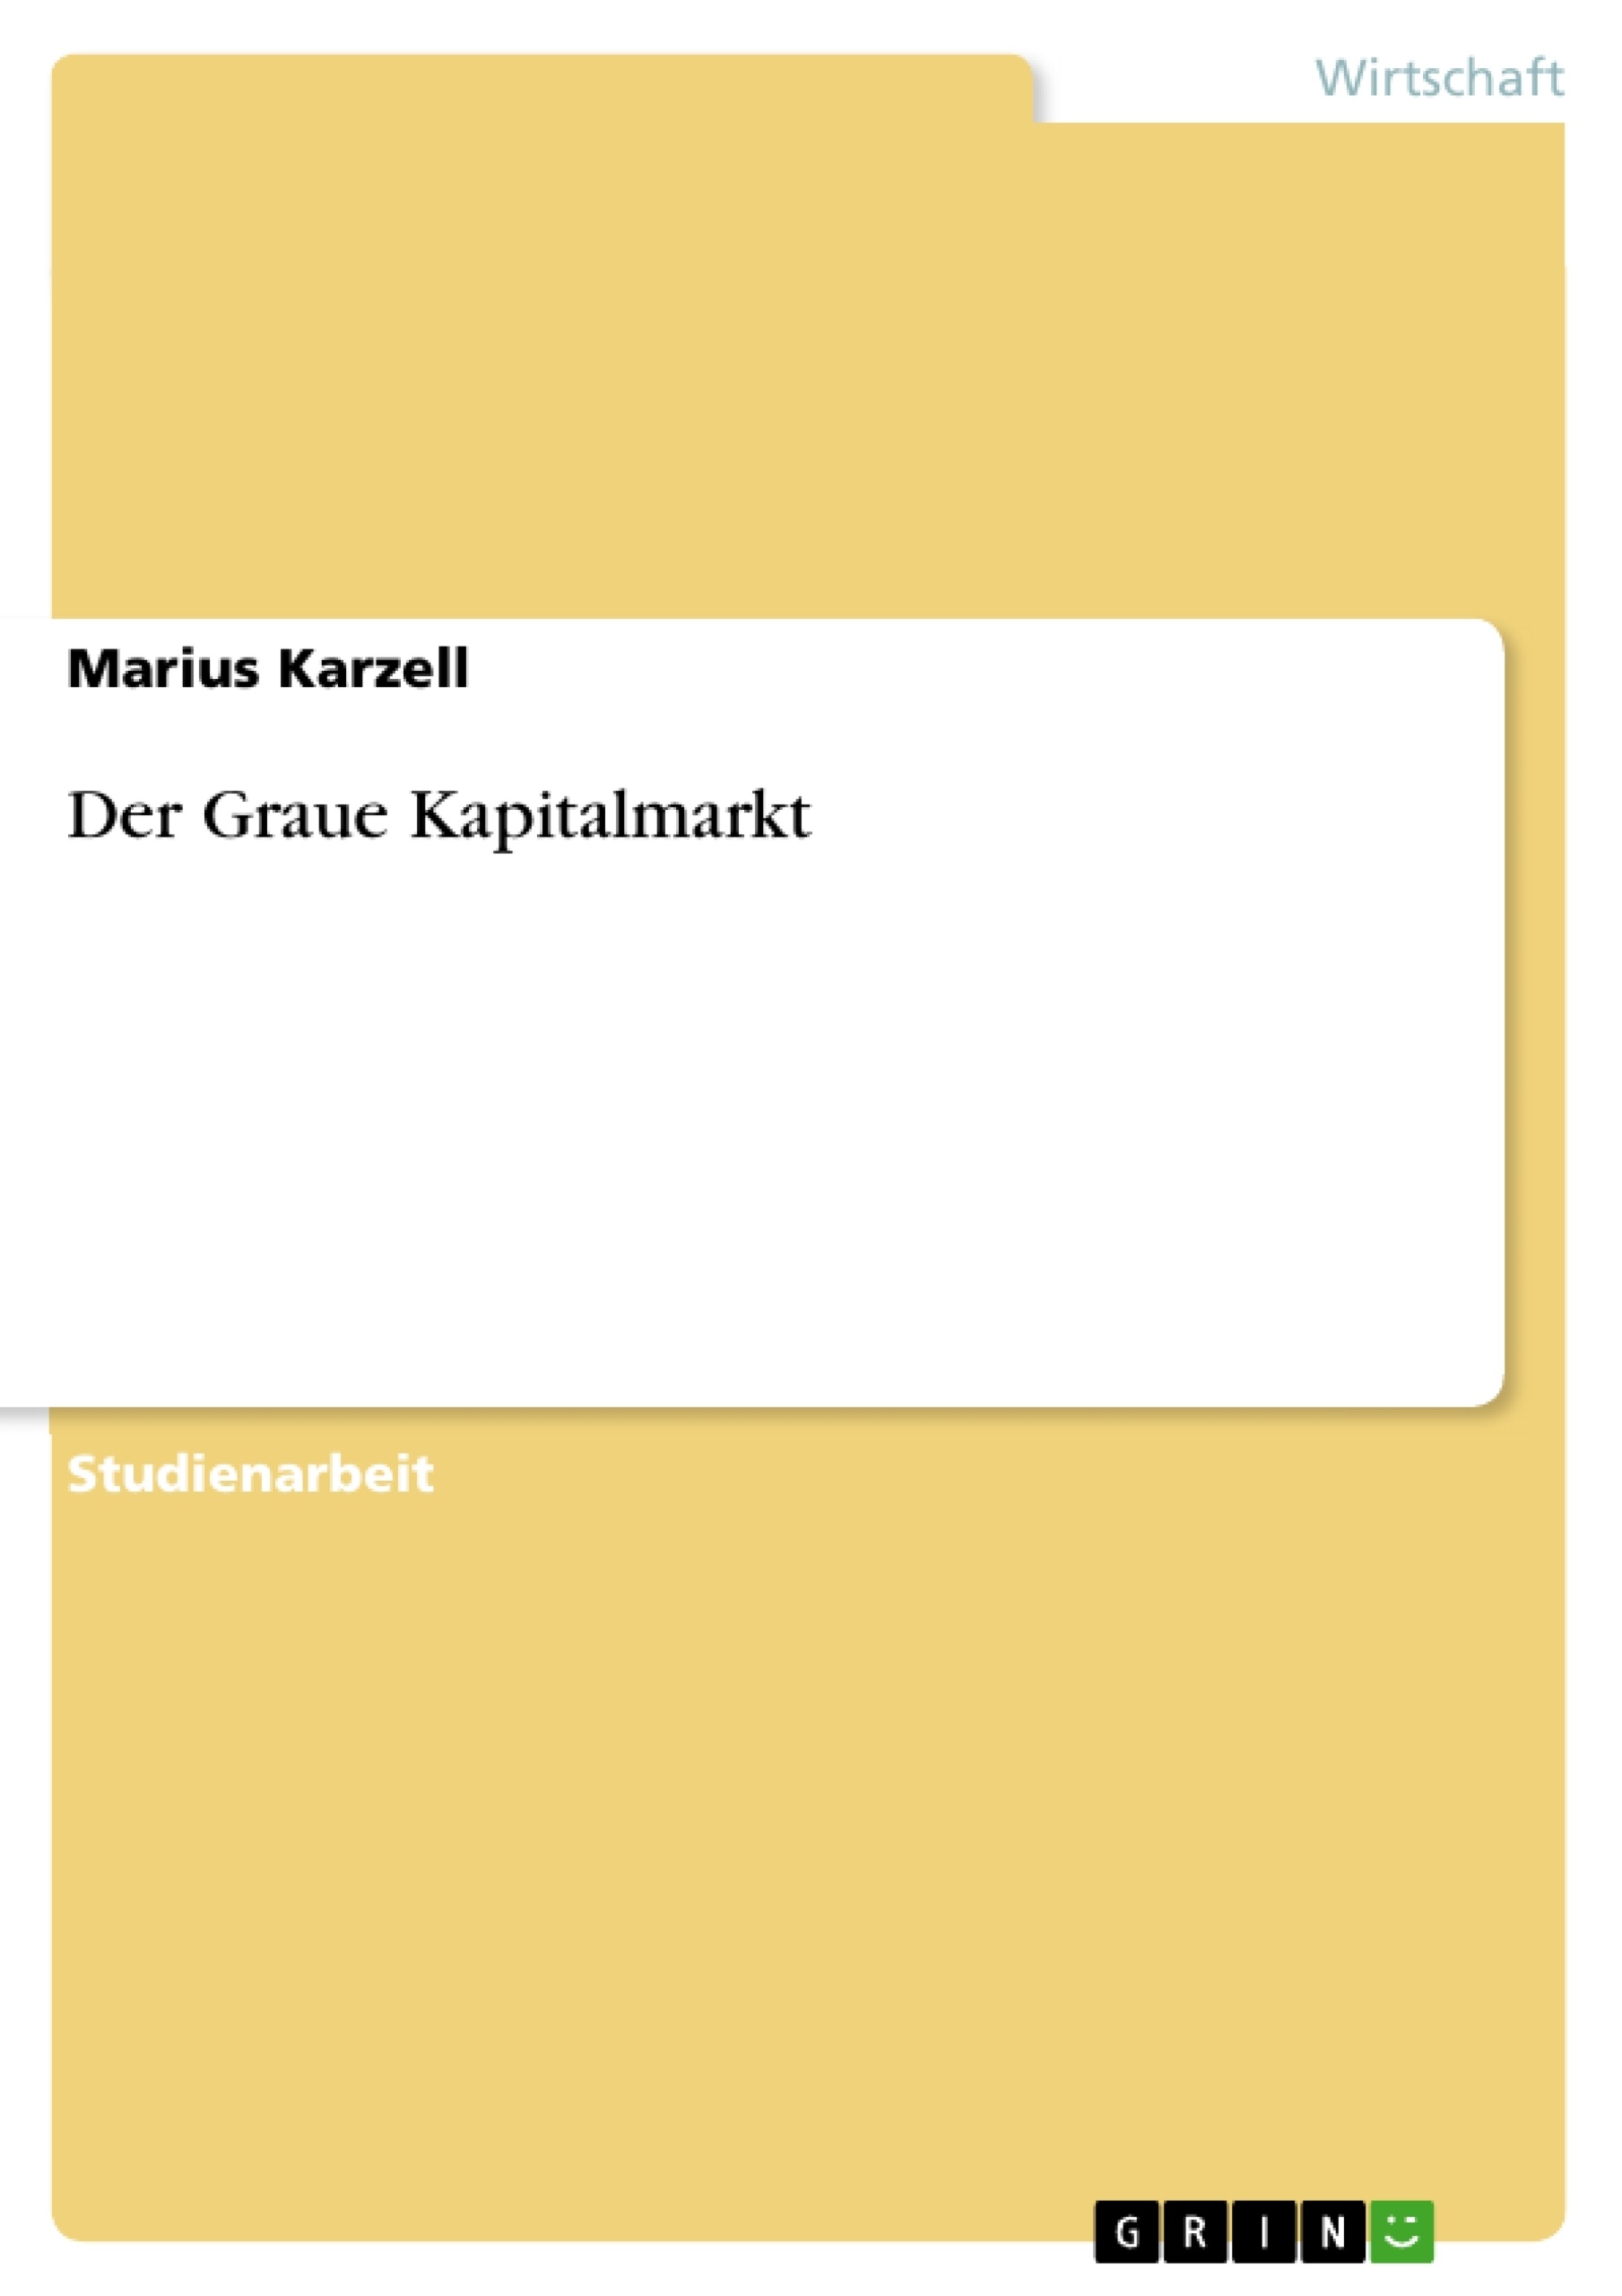 Title: Der Graue Kapitalmarkt